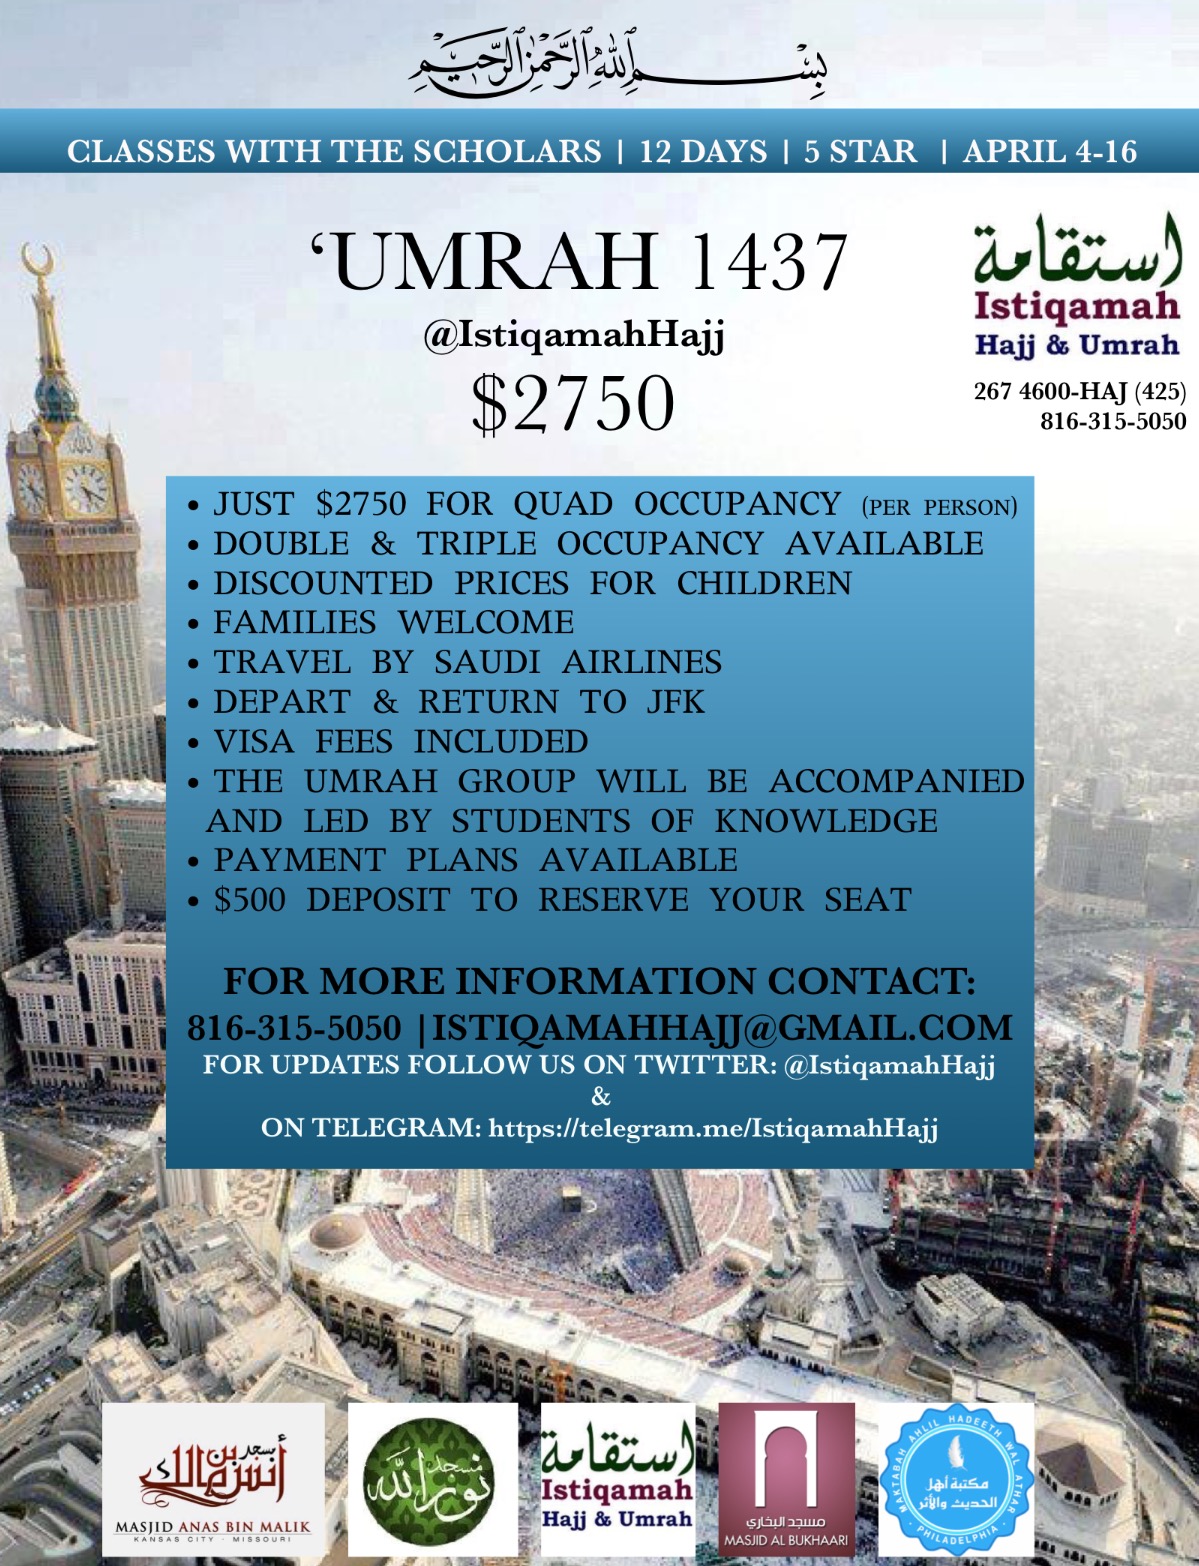 ‘Umrah 1437 with Istiqamah Hajj